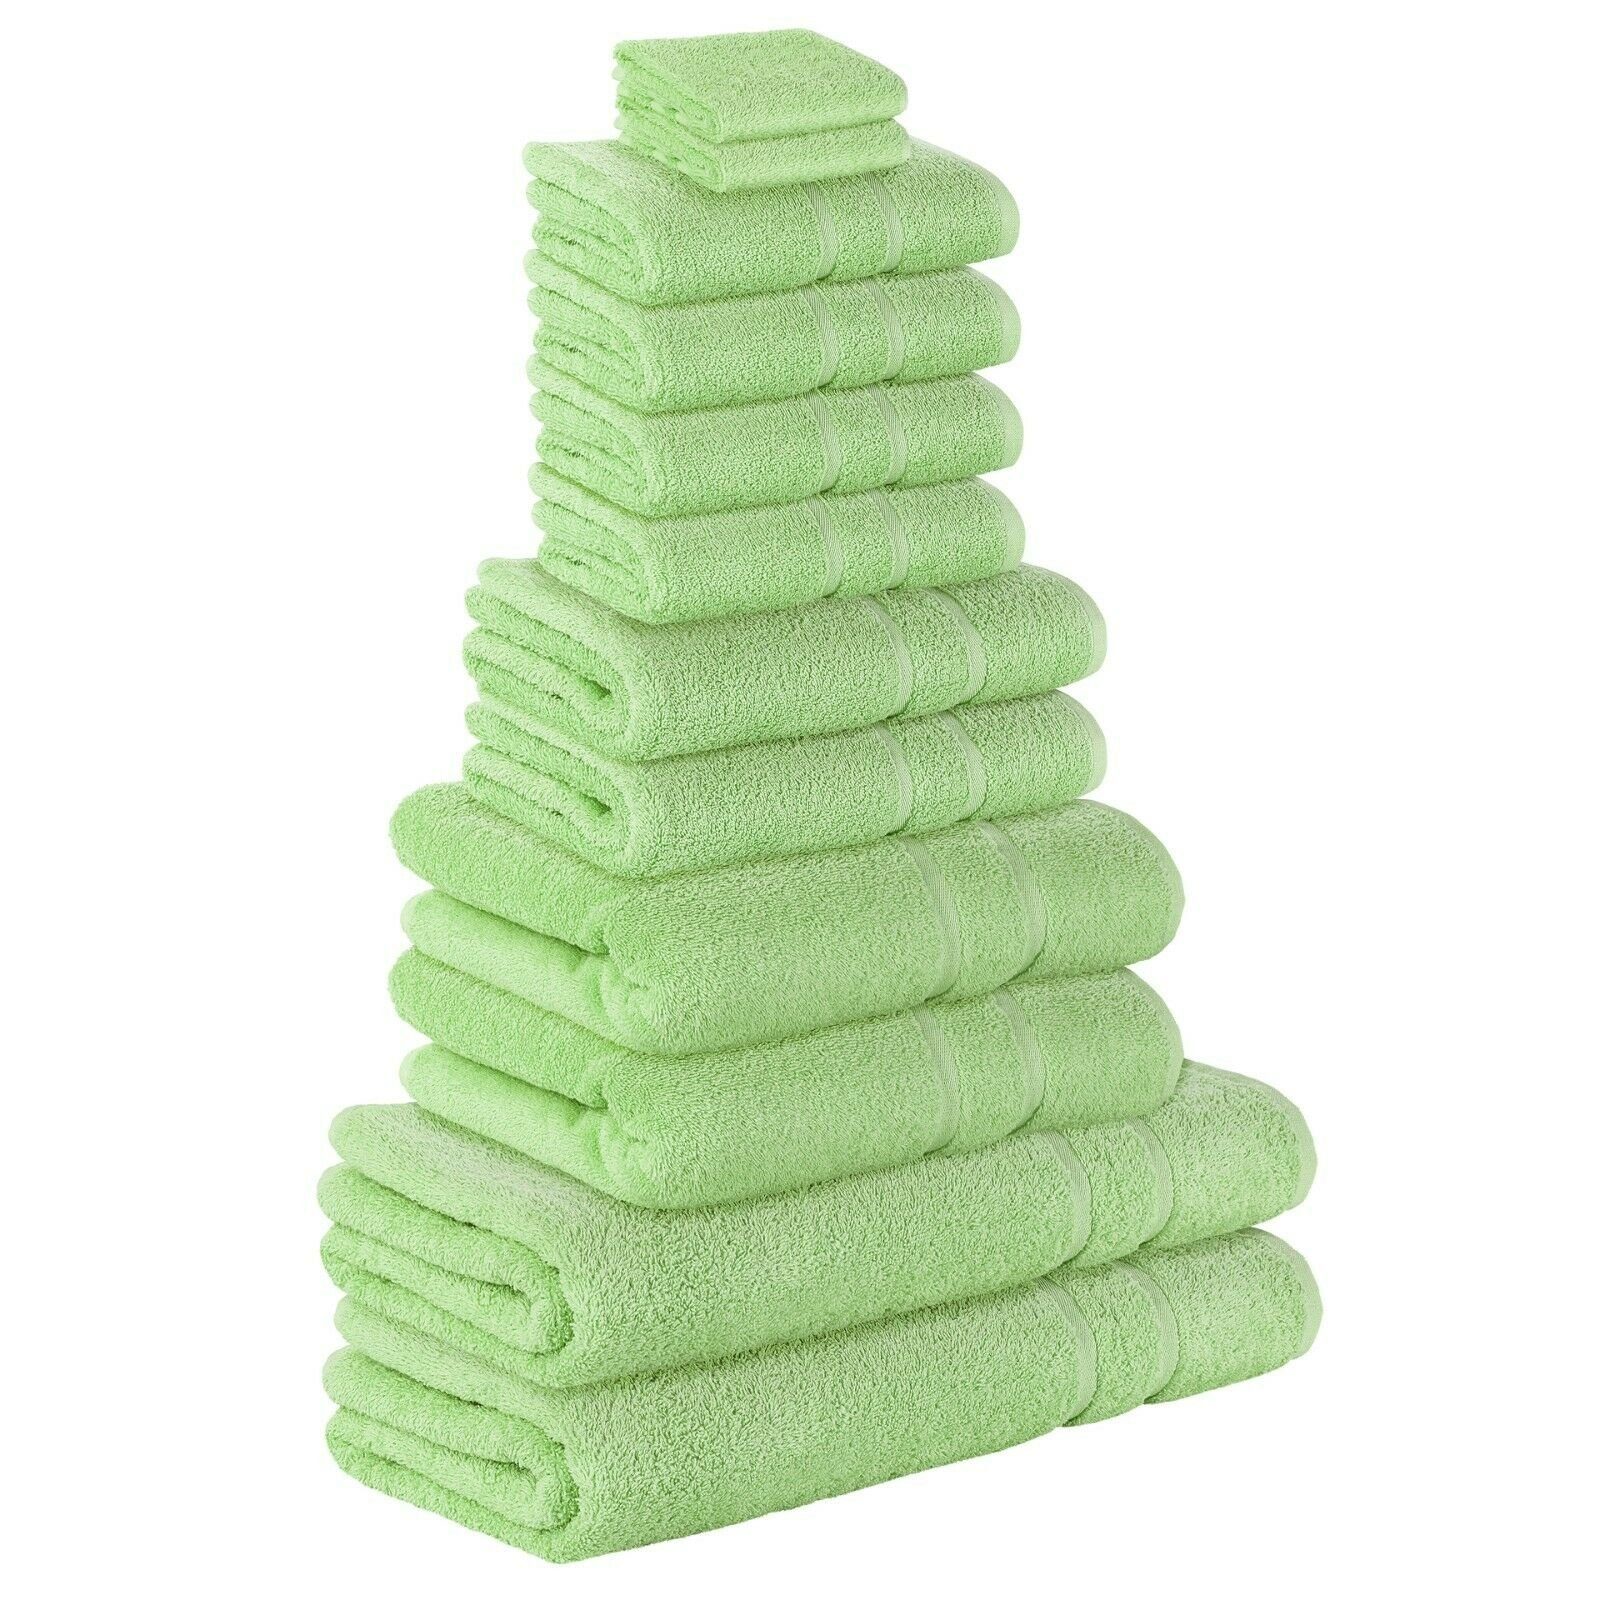 StickandShine Handtuch Set 4x Gästehandtuch 2x Handtücher 4x Duschtücher 2x Badetuch als SET in verschiedenen Farben (12 Teilig) 100% Baumwolle 500 GSM Frottee 12er Handtuch Pack, (Spar-SET) Hellgrün